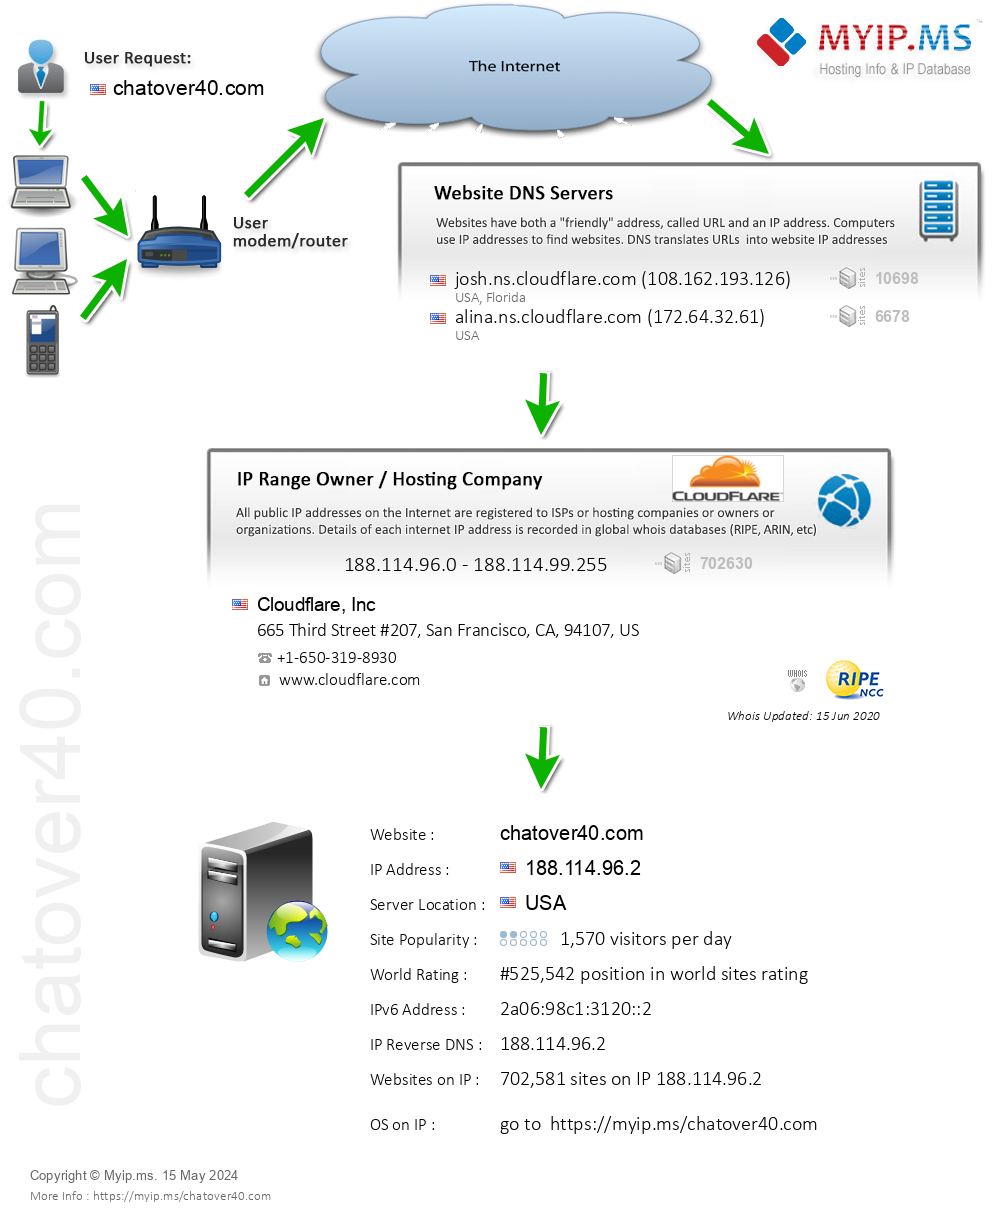 Chatover40.com - Website Hosting Visual IP Diagram